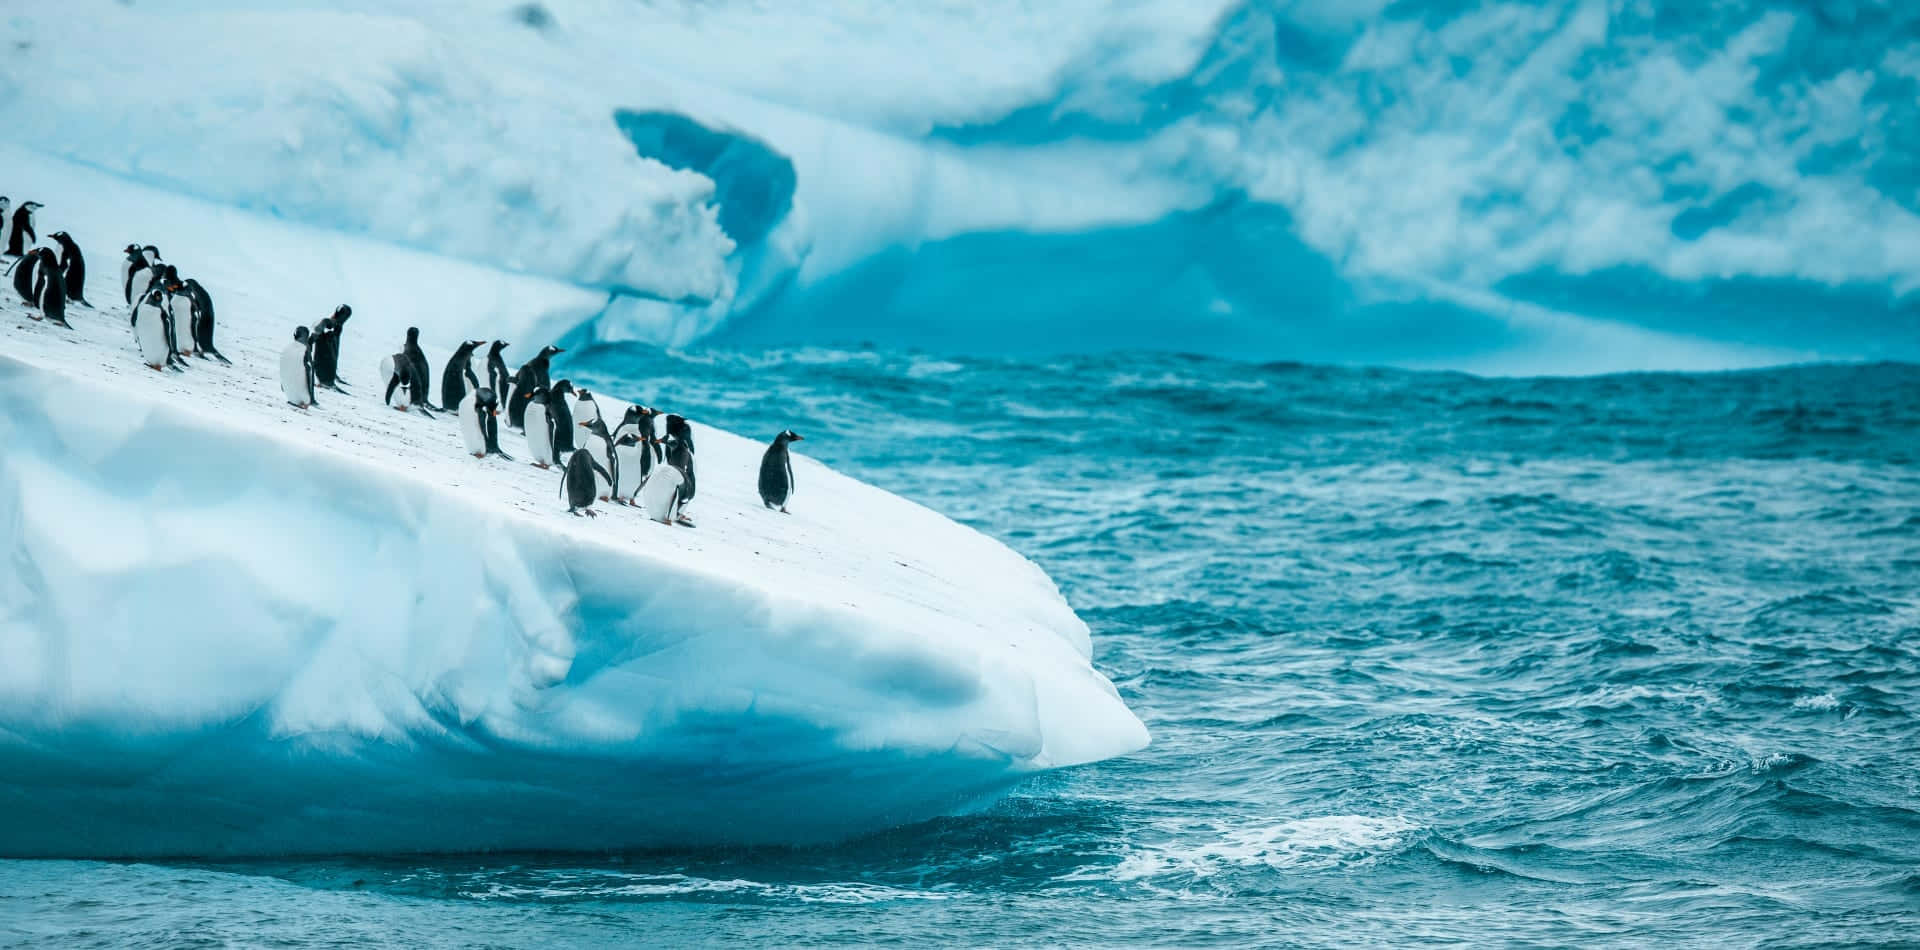 Penguins On An Iceberg